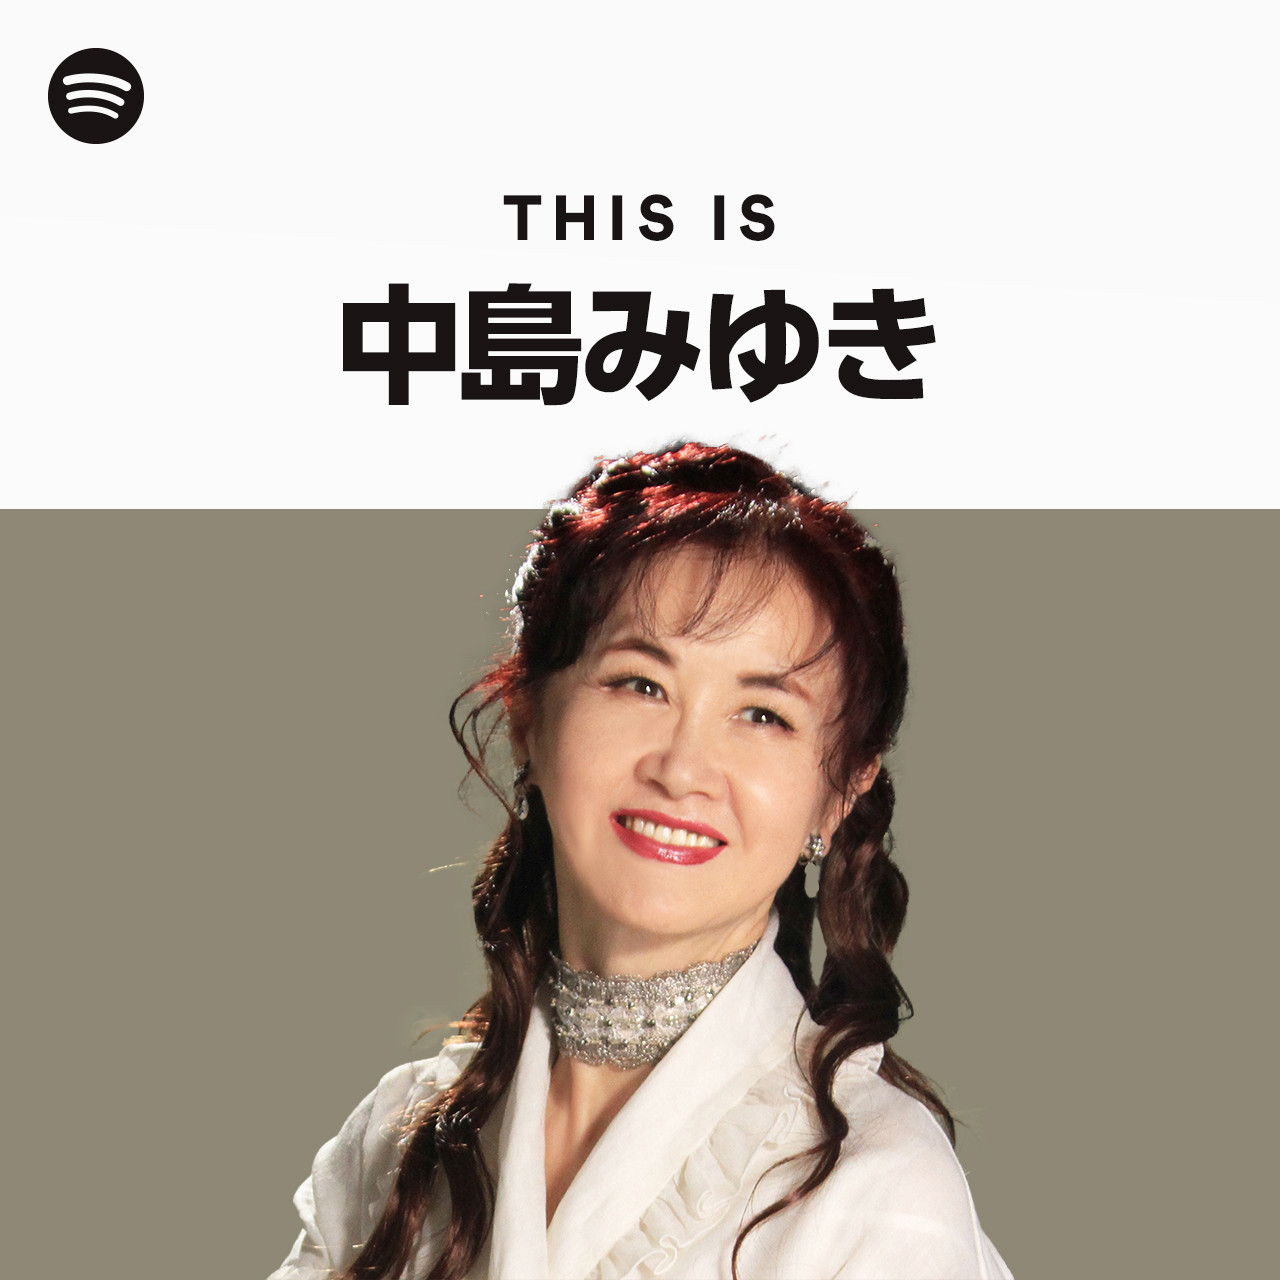 This Is Miyuki Nakajima - playlist by Spotify | Spotify